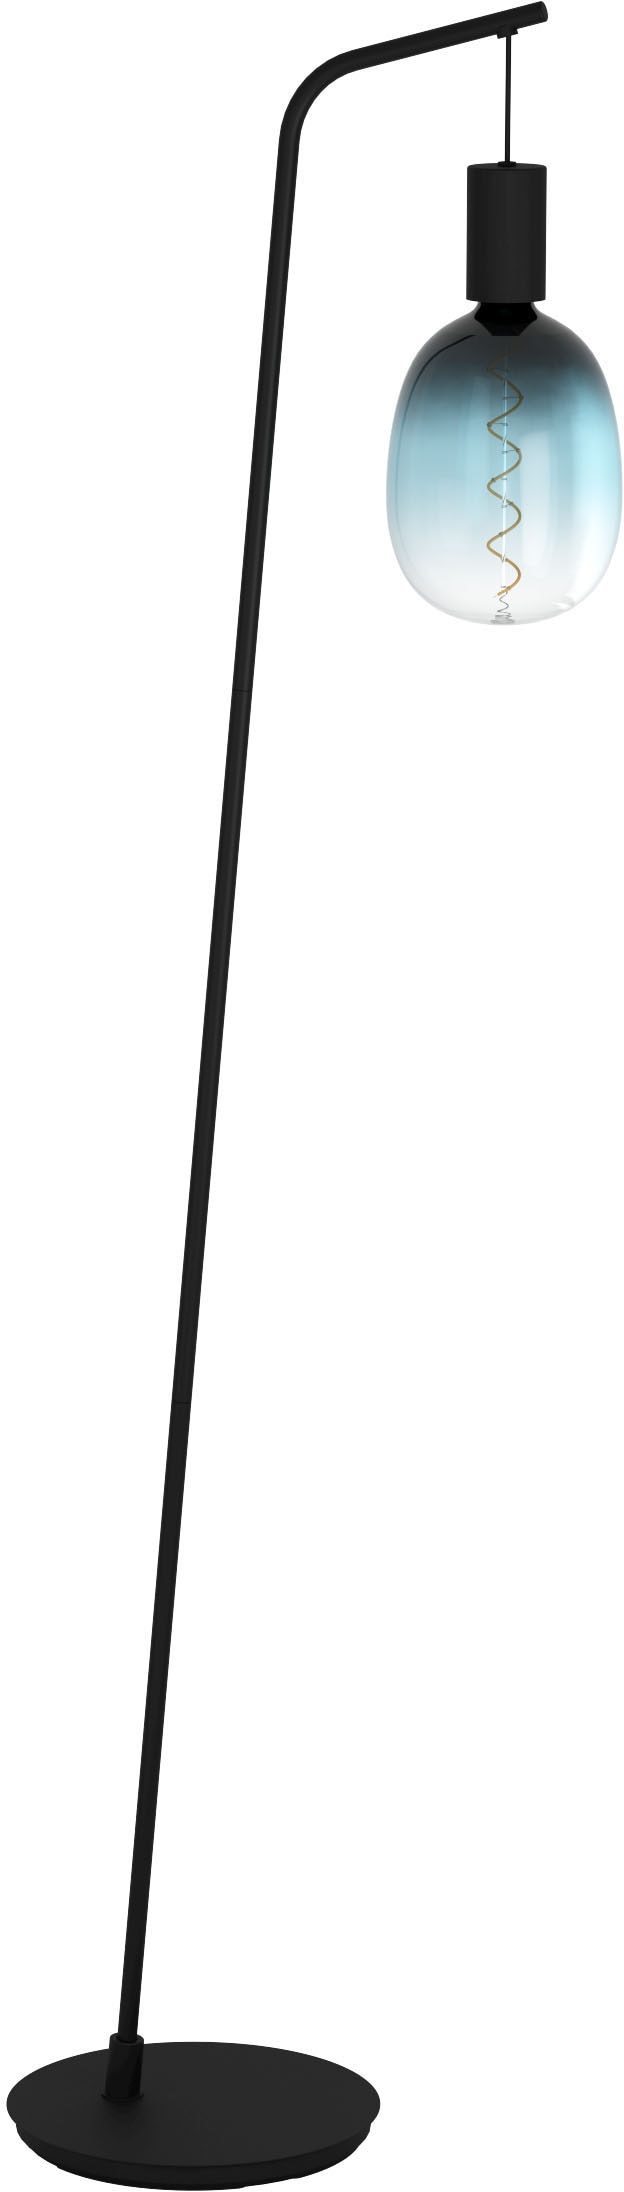 EGLO Stehlampe »CRANLEY«, Stehleuchte in schwarz aus Stahl - exkl. E27 - 1X40W